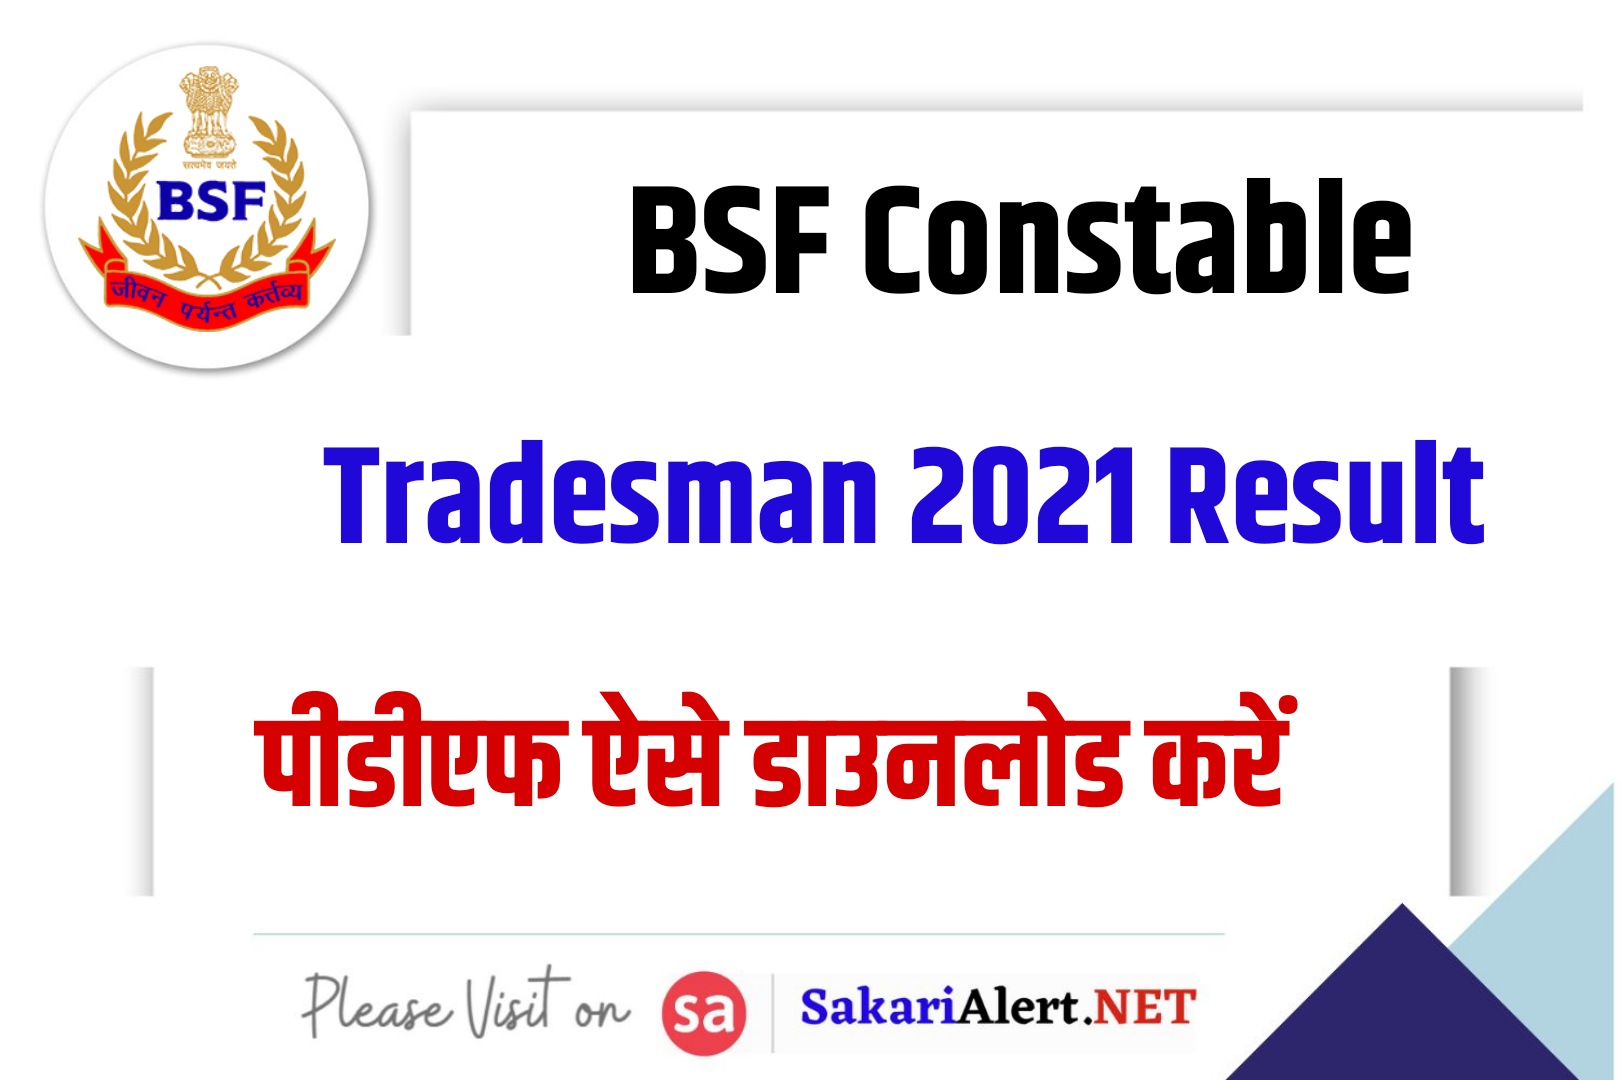 BSF Constable Tradesman 2021 Result